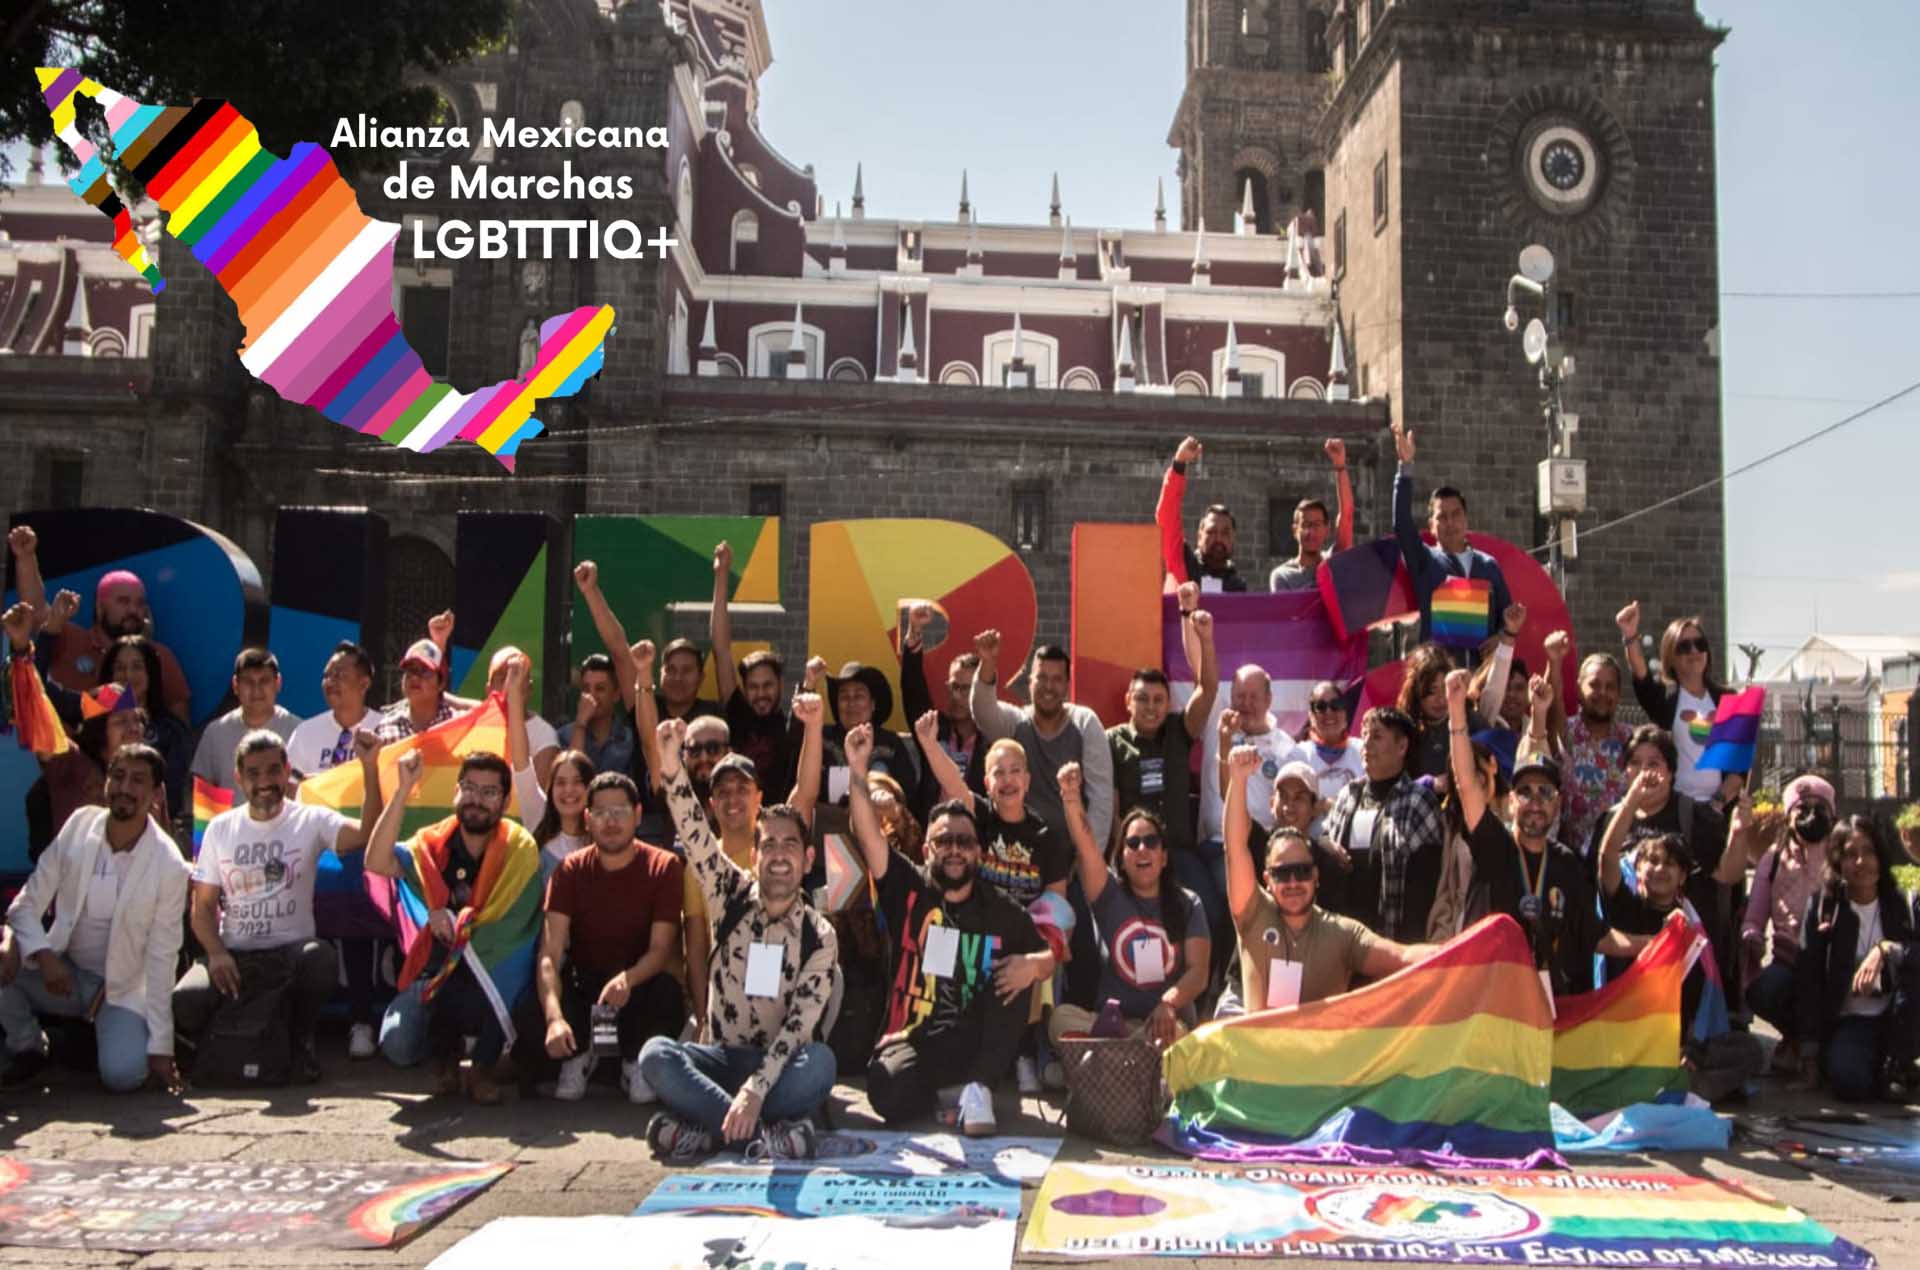 Alianza Mexicana de Marchas LGBTTTIQ+